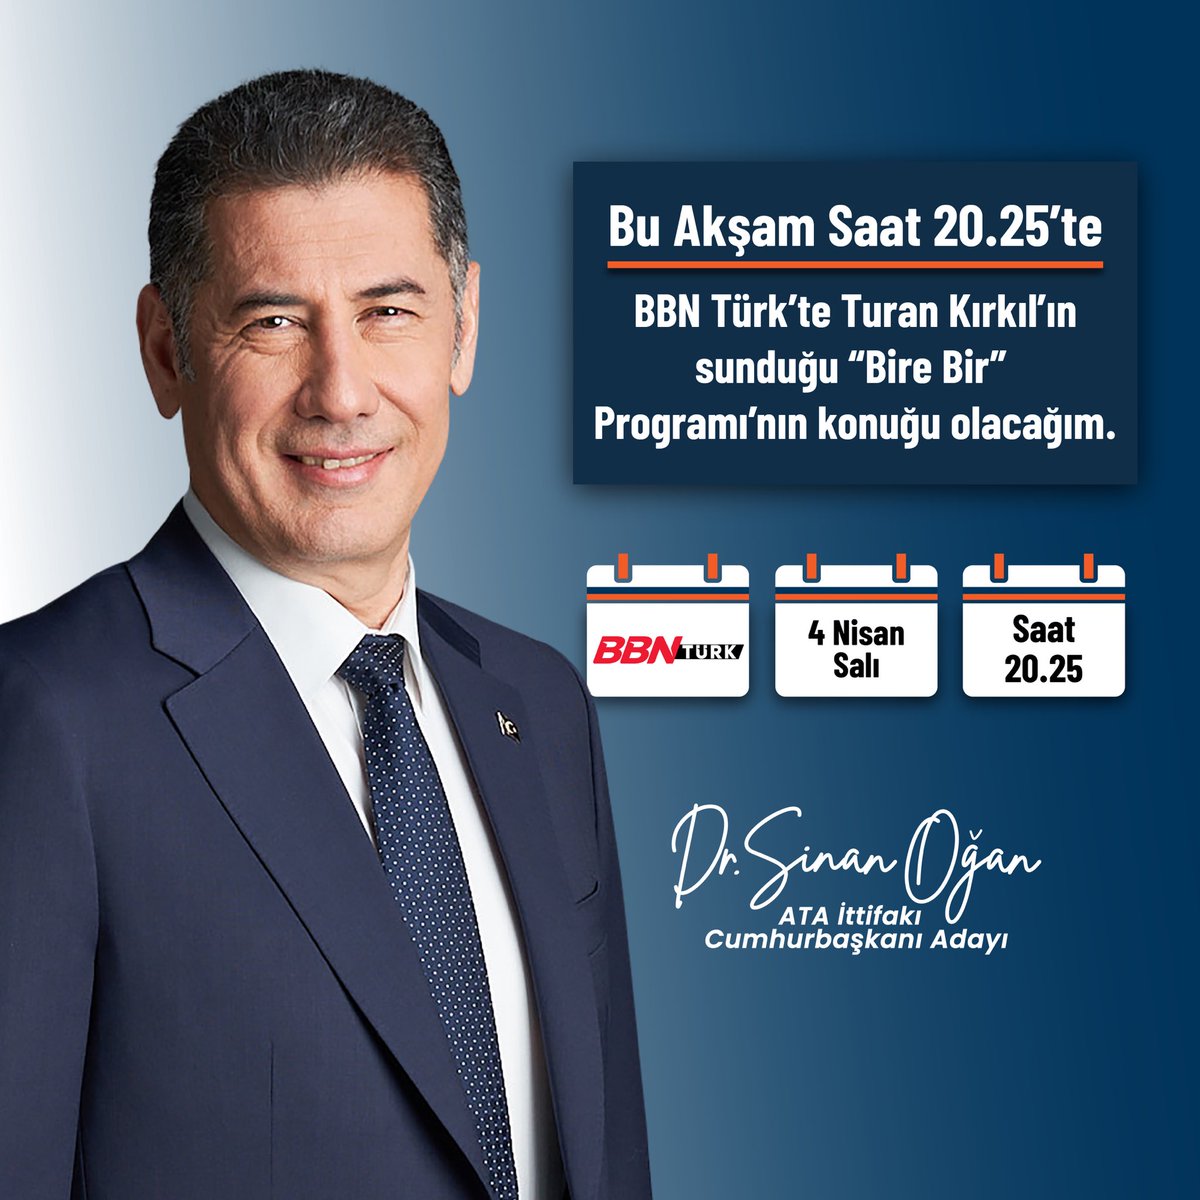 Sevgili vatandaşlarım, Bu akşam saat 20.25'te @bbnturktv 'de @Turankirkil 'in sunduğu #BireBir Programı'nın konuğu olacağım. Türkiye'yi yönetmeye talip biri olarak seçim politikalarımız hakkında pek çok şey anlatacağım. #OAnGeliyor